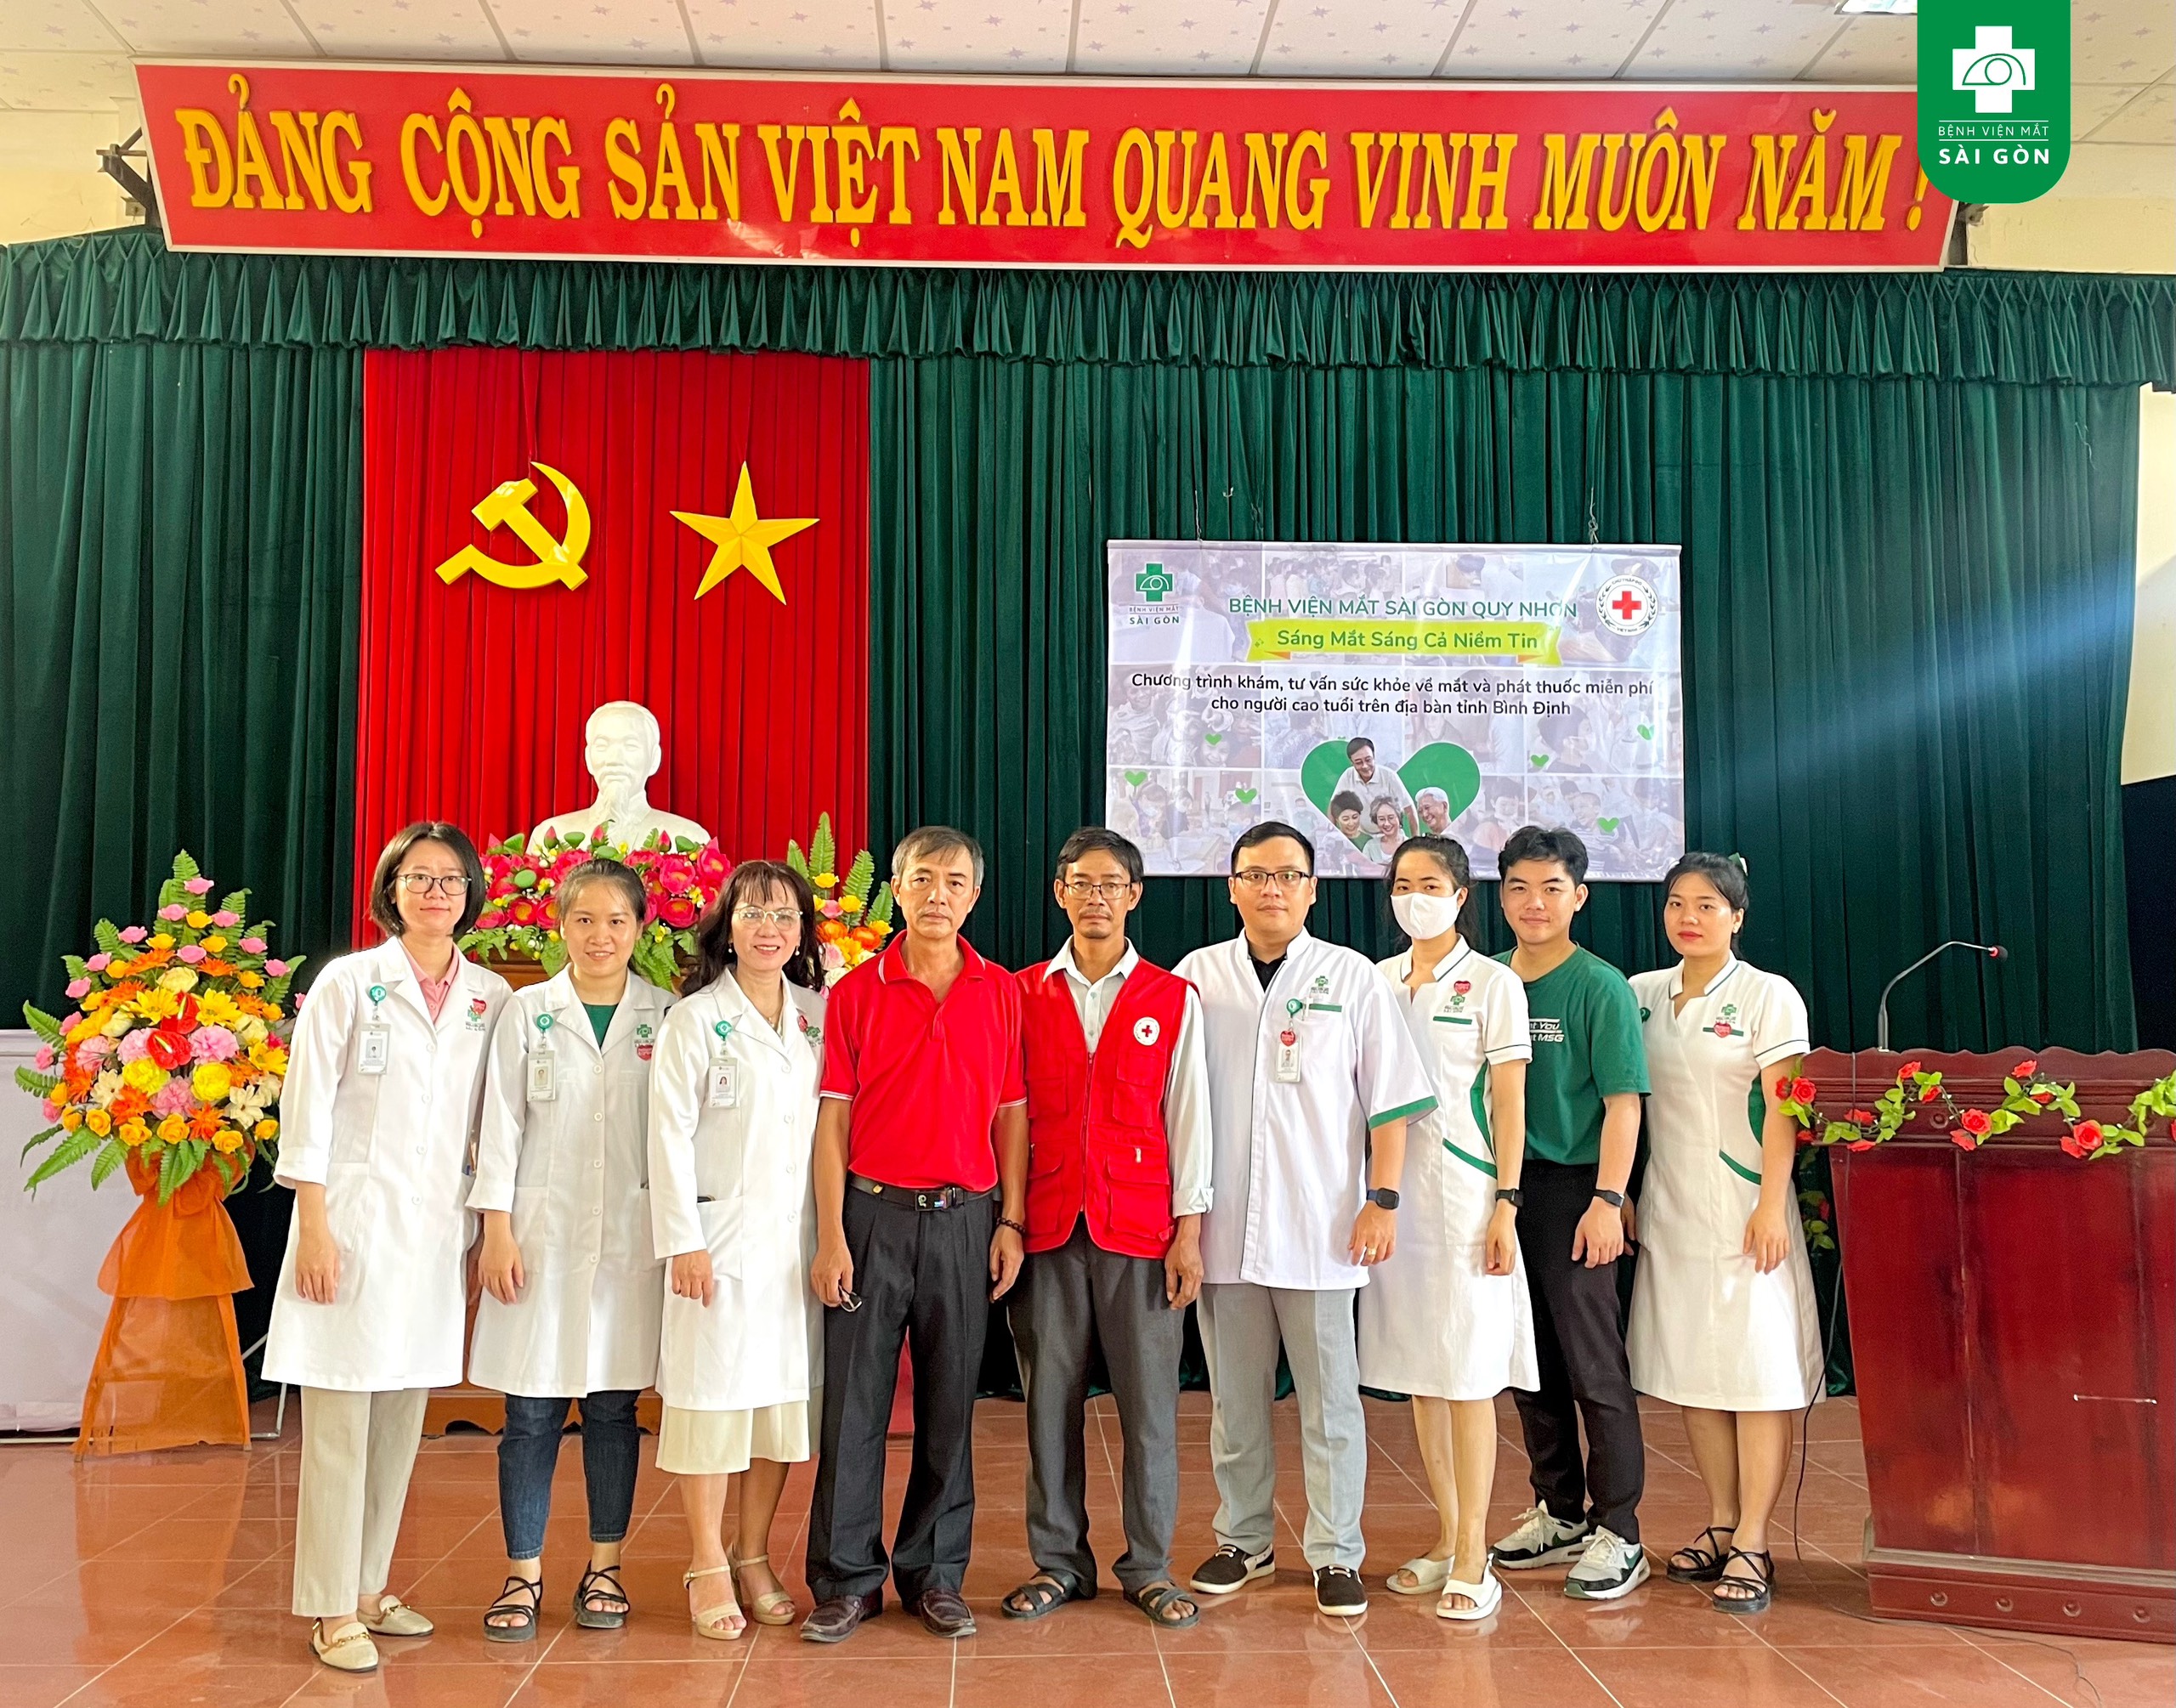 Chuyến xe vì cộng đồng ''Sáng mắt sáng cả niềm tin" sáng nay trao gửi yêu thương cho hơn 150 đôi mắt của người dân trên địa bàn huyện Tuy Phước